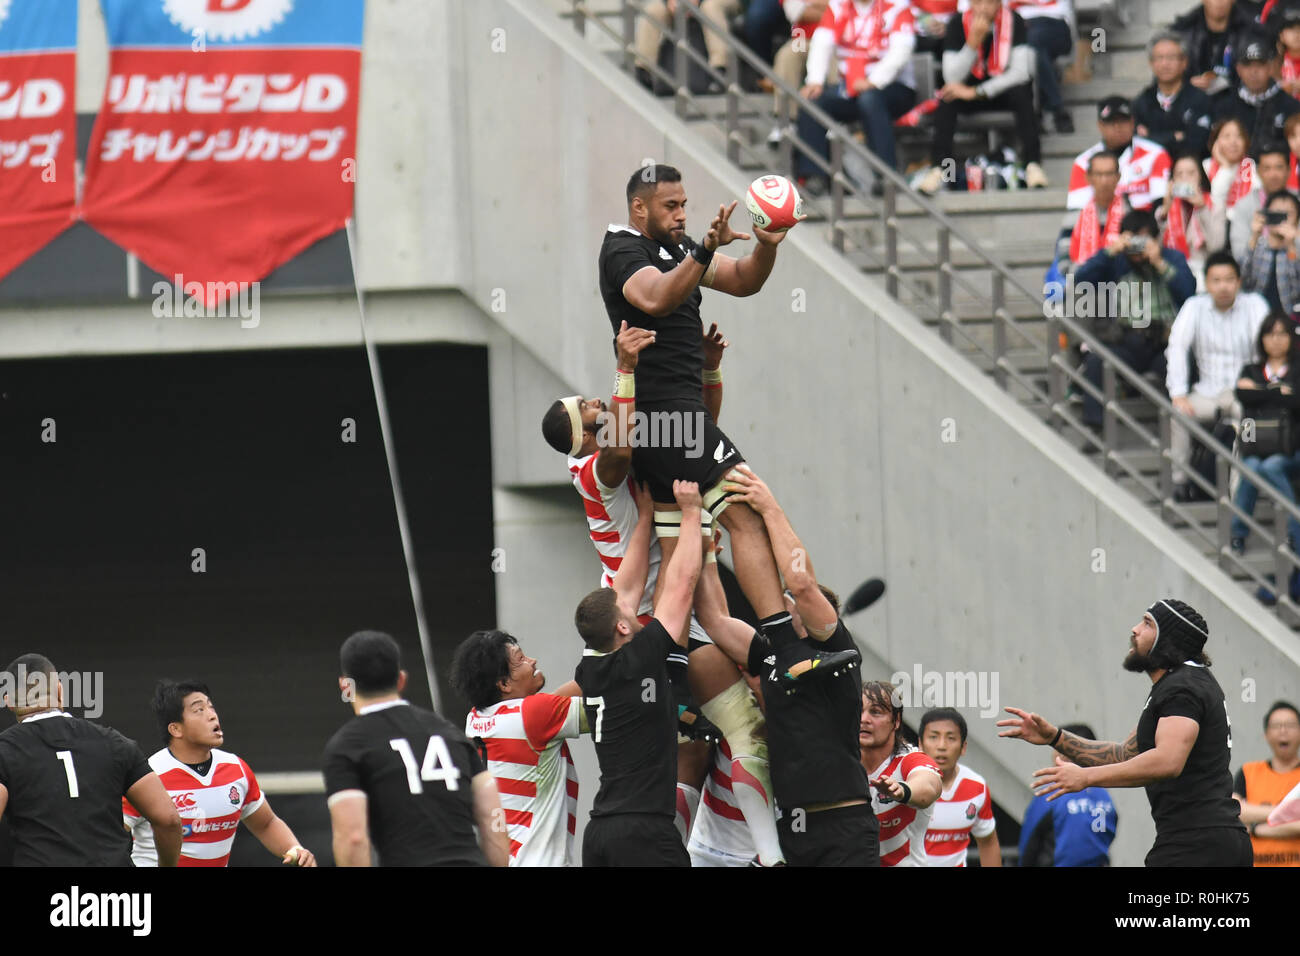 Patrick Tuipulotu de Nouvelle-Zélande se bat pour la balle dans une ligne-out pendant la Rugby test match entre le Japon et la Nouvelle-Zélande au Ajinomoto Stadium à Tokyo, Japon le 3 novembre 2018. (Photo de bla) Banque D'Images